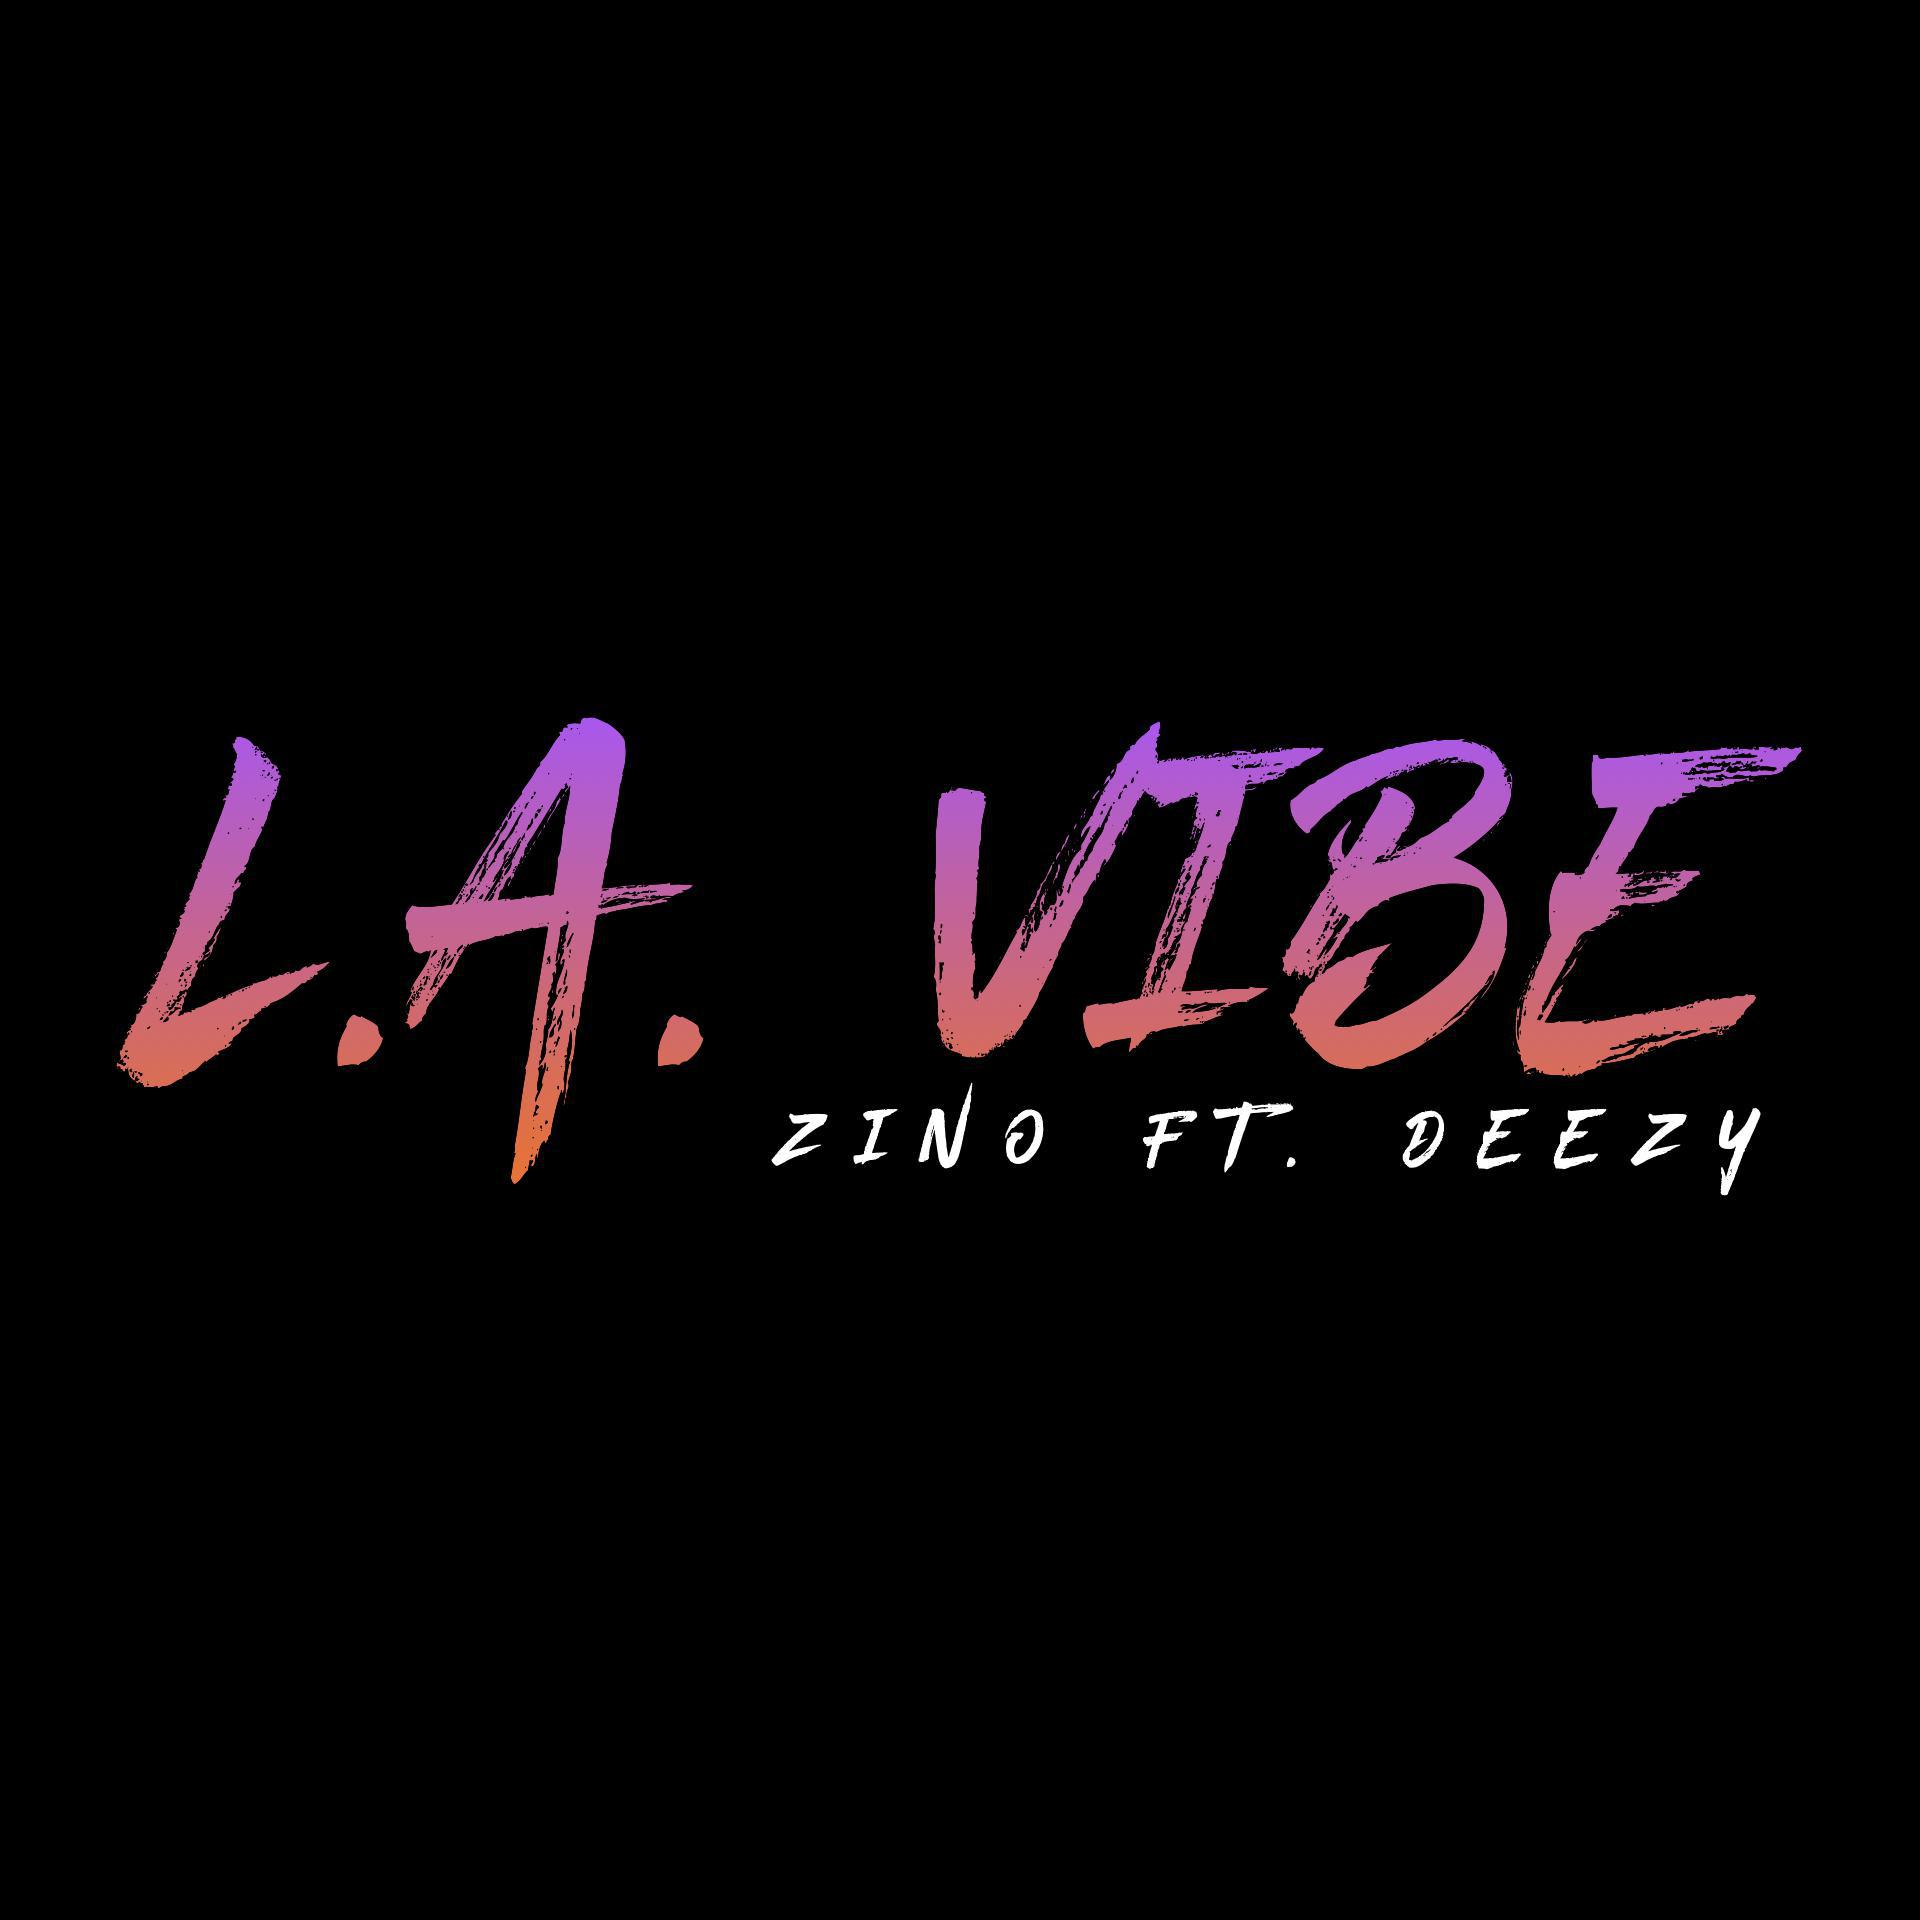 何山ZINO - L.A. Vibe(Single Ver.) Feat. DEEZY